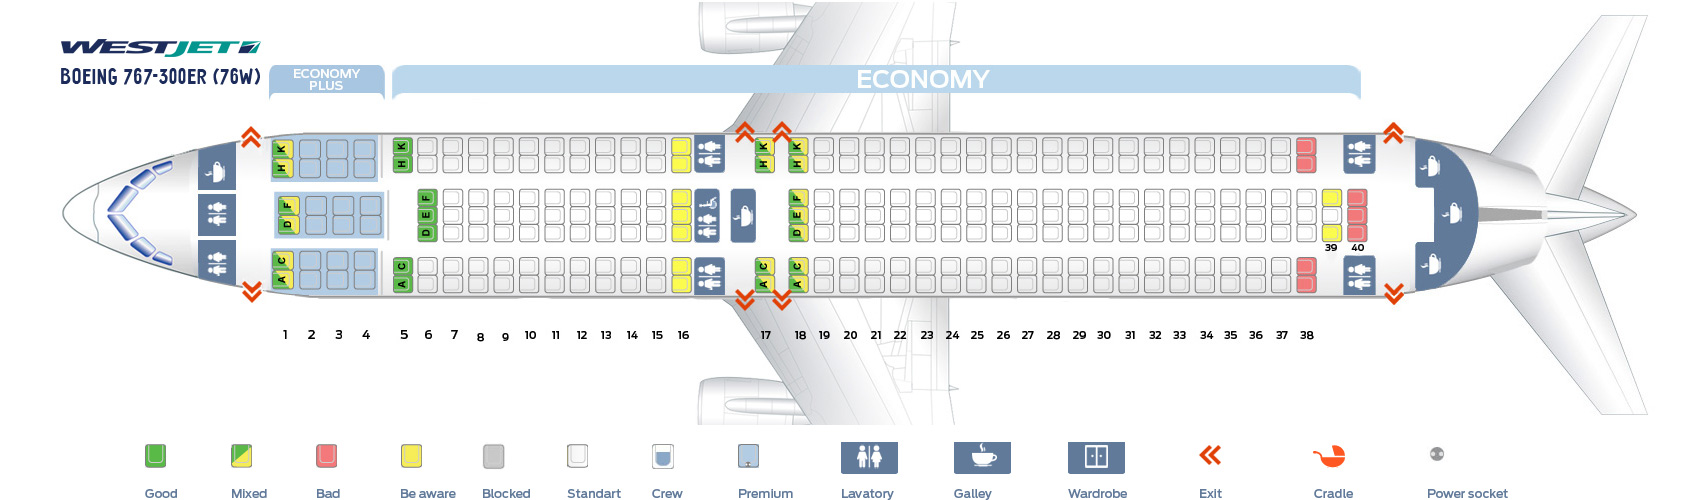 Boeing 767 схема